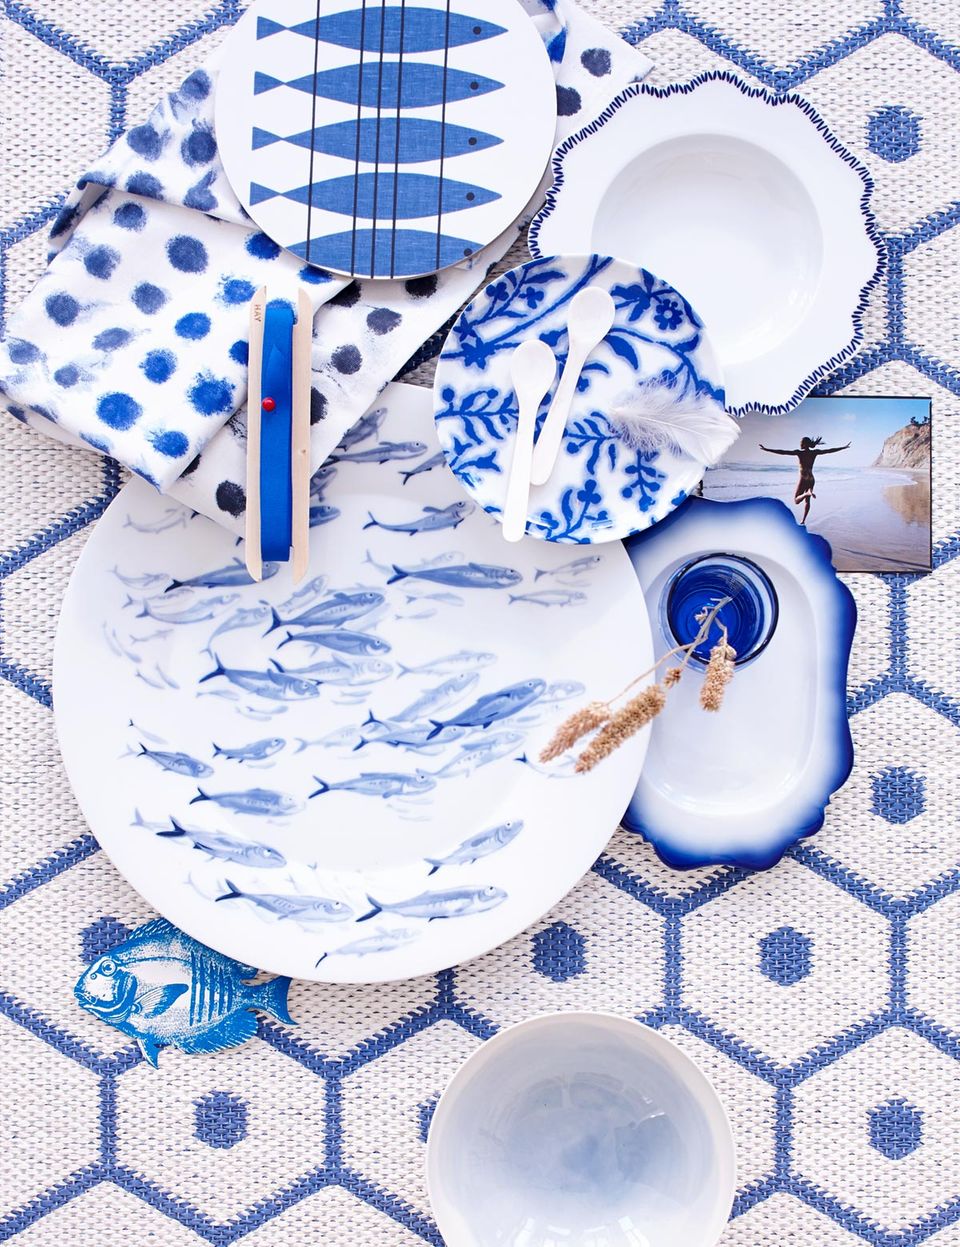 Einrichten und dekorieren im maritimen Look mit Geschirr in Blau-Weiß